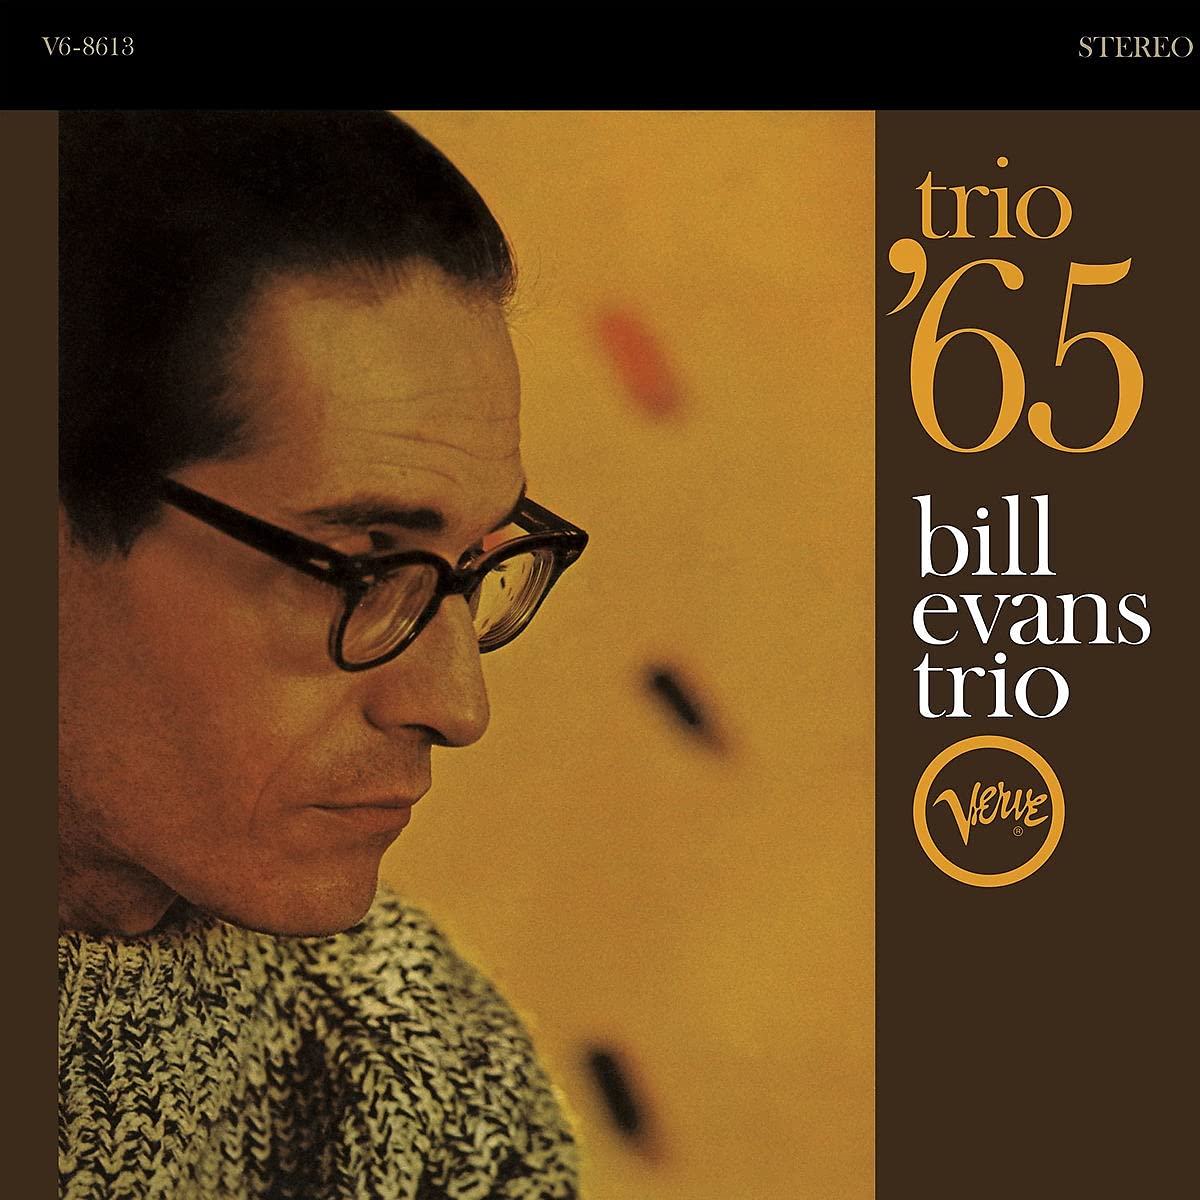 Bill Evans Trio - Trio '65